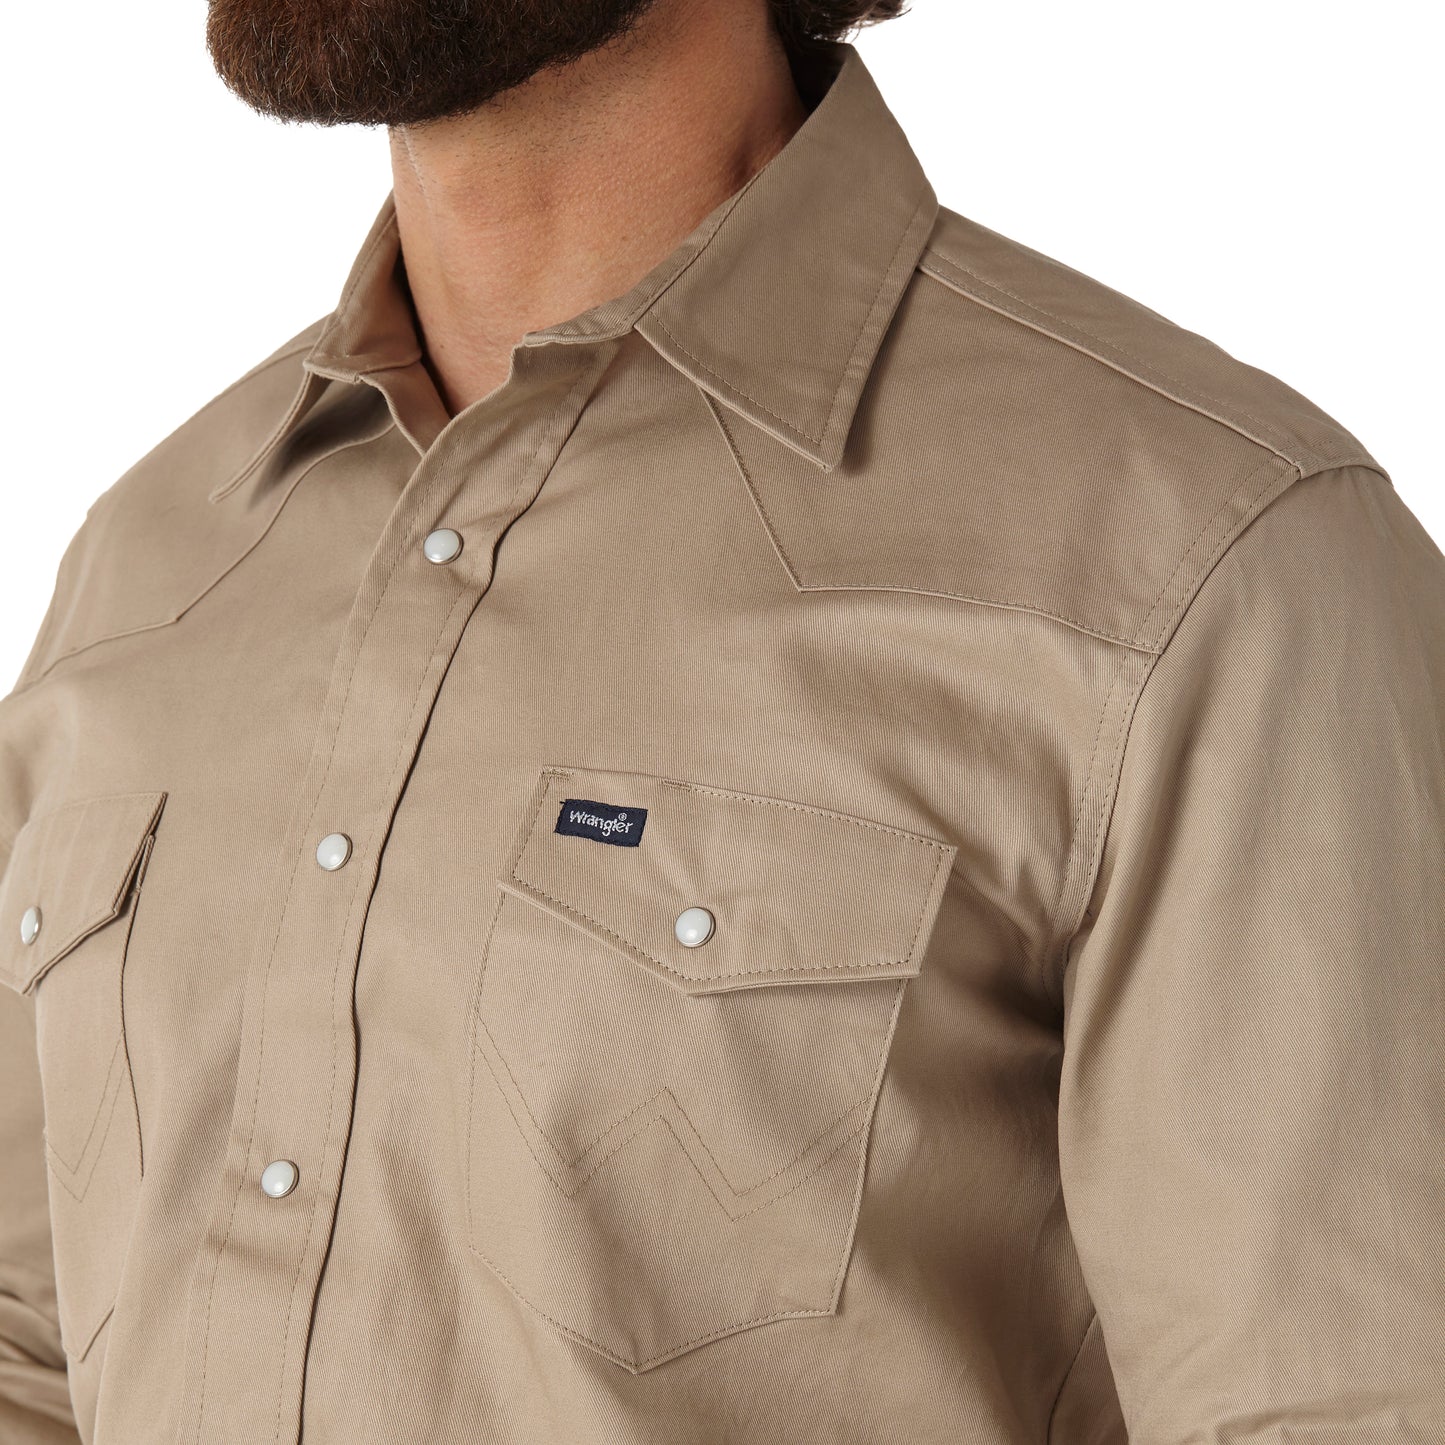 Wrangler Men's Painted Desert Khaki Snap Work Shirt MS70319